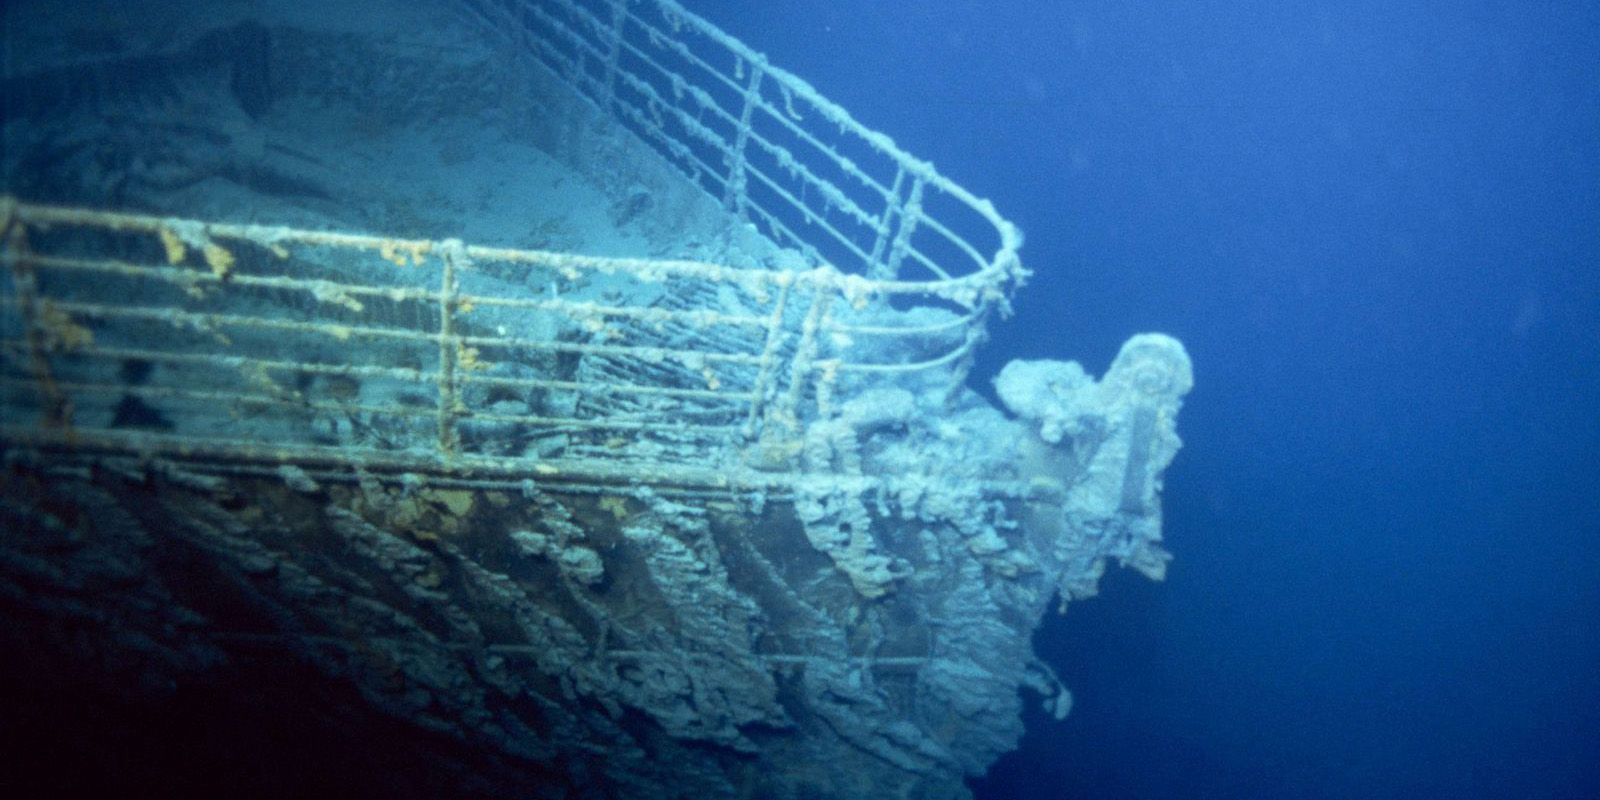 10 вопросов о Титанике, которые вы стесняетесь задать (но, возможно, задаетесь вопросом)